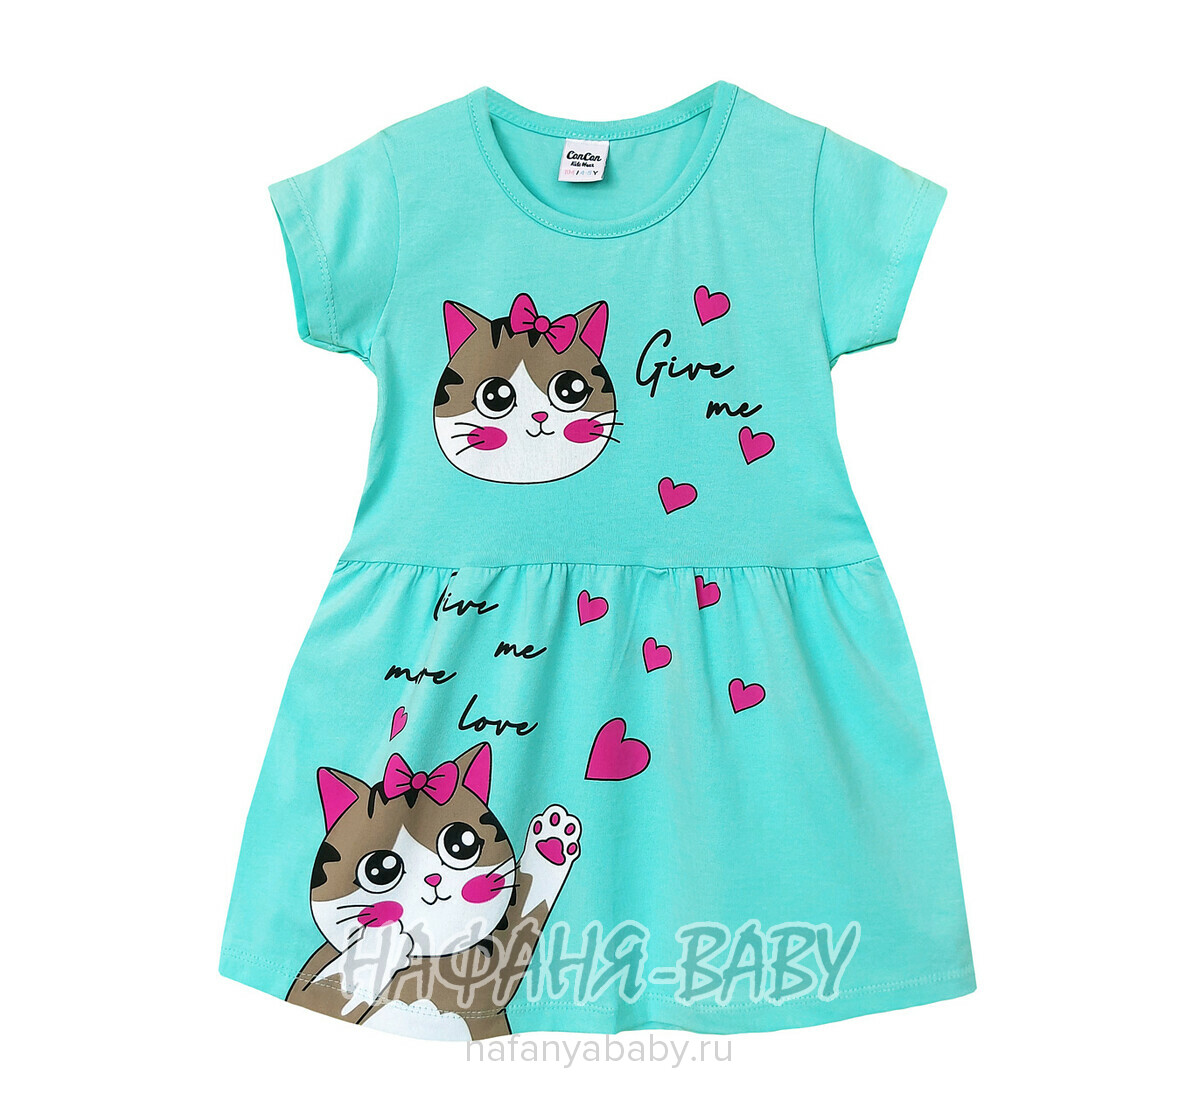 Детское платье Con Con арт. 13087, для девочки 3-6 лет, цвет бирюзовый, оптом Турция